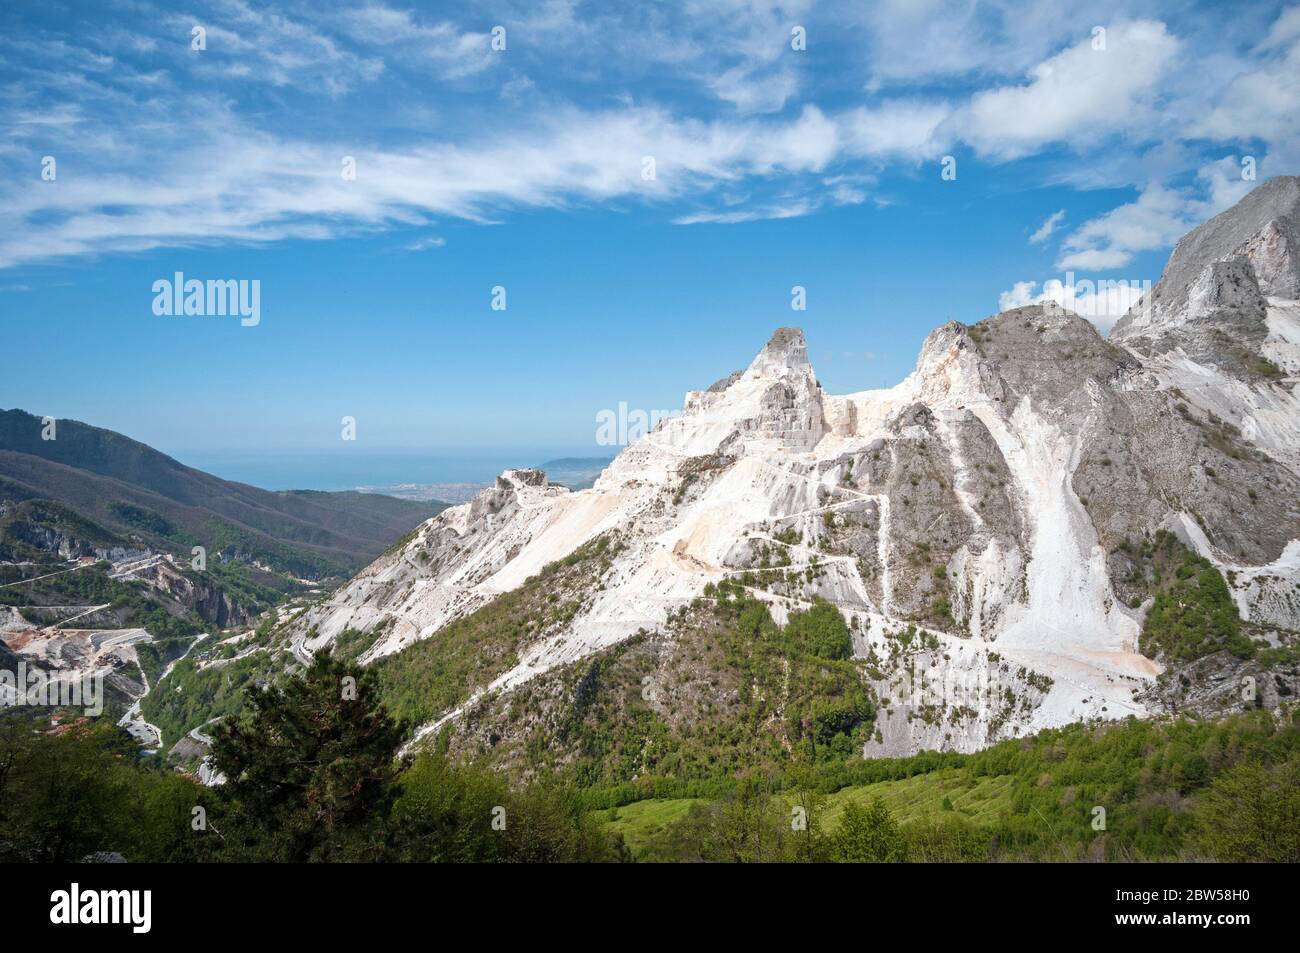 Paesaggio panoramico delle cave di marmo bianco di Carrara nelle Alpi Apuane. Colonnata, frazione massa Carrara. Toscana, Italia Foto Stock